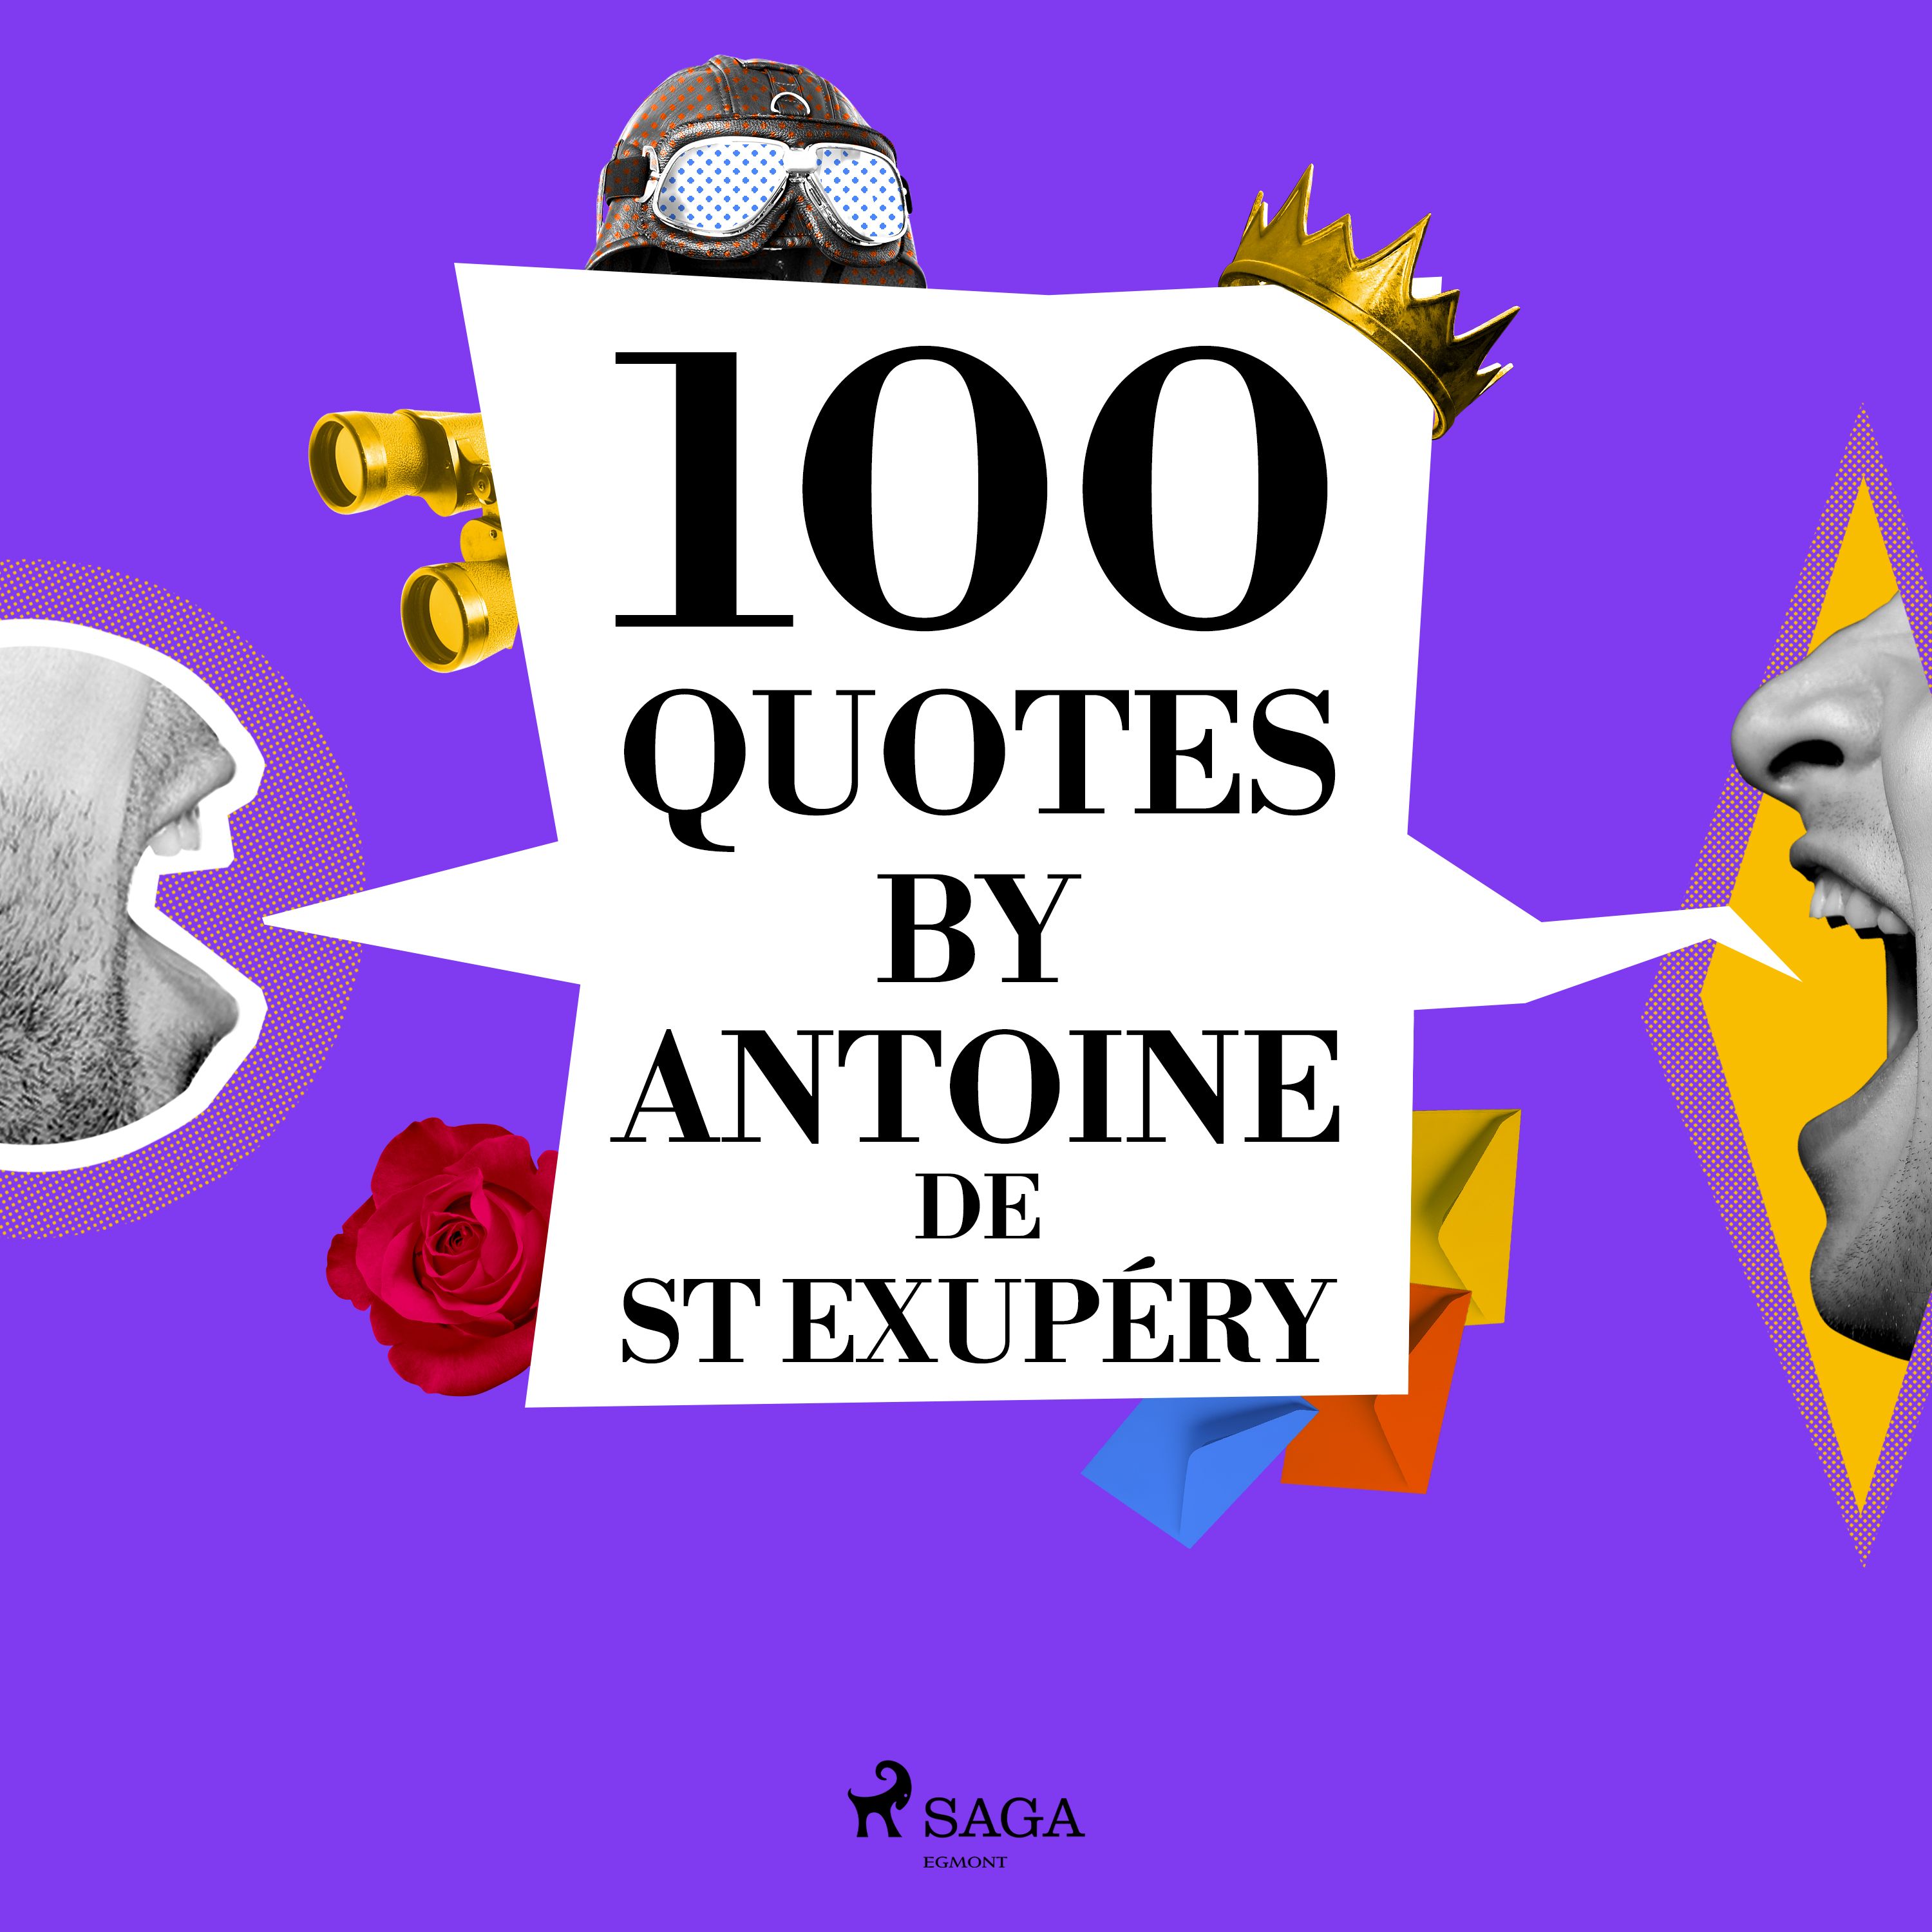 100 Quotes by Antoine de St Exupéry, audiobook by Antoine de Saint-Exupéry